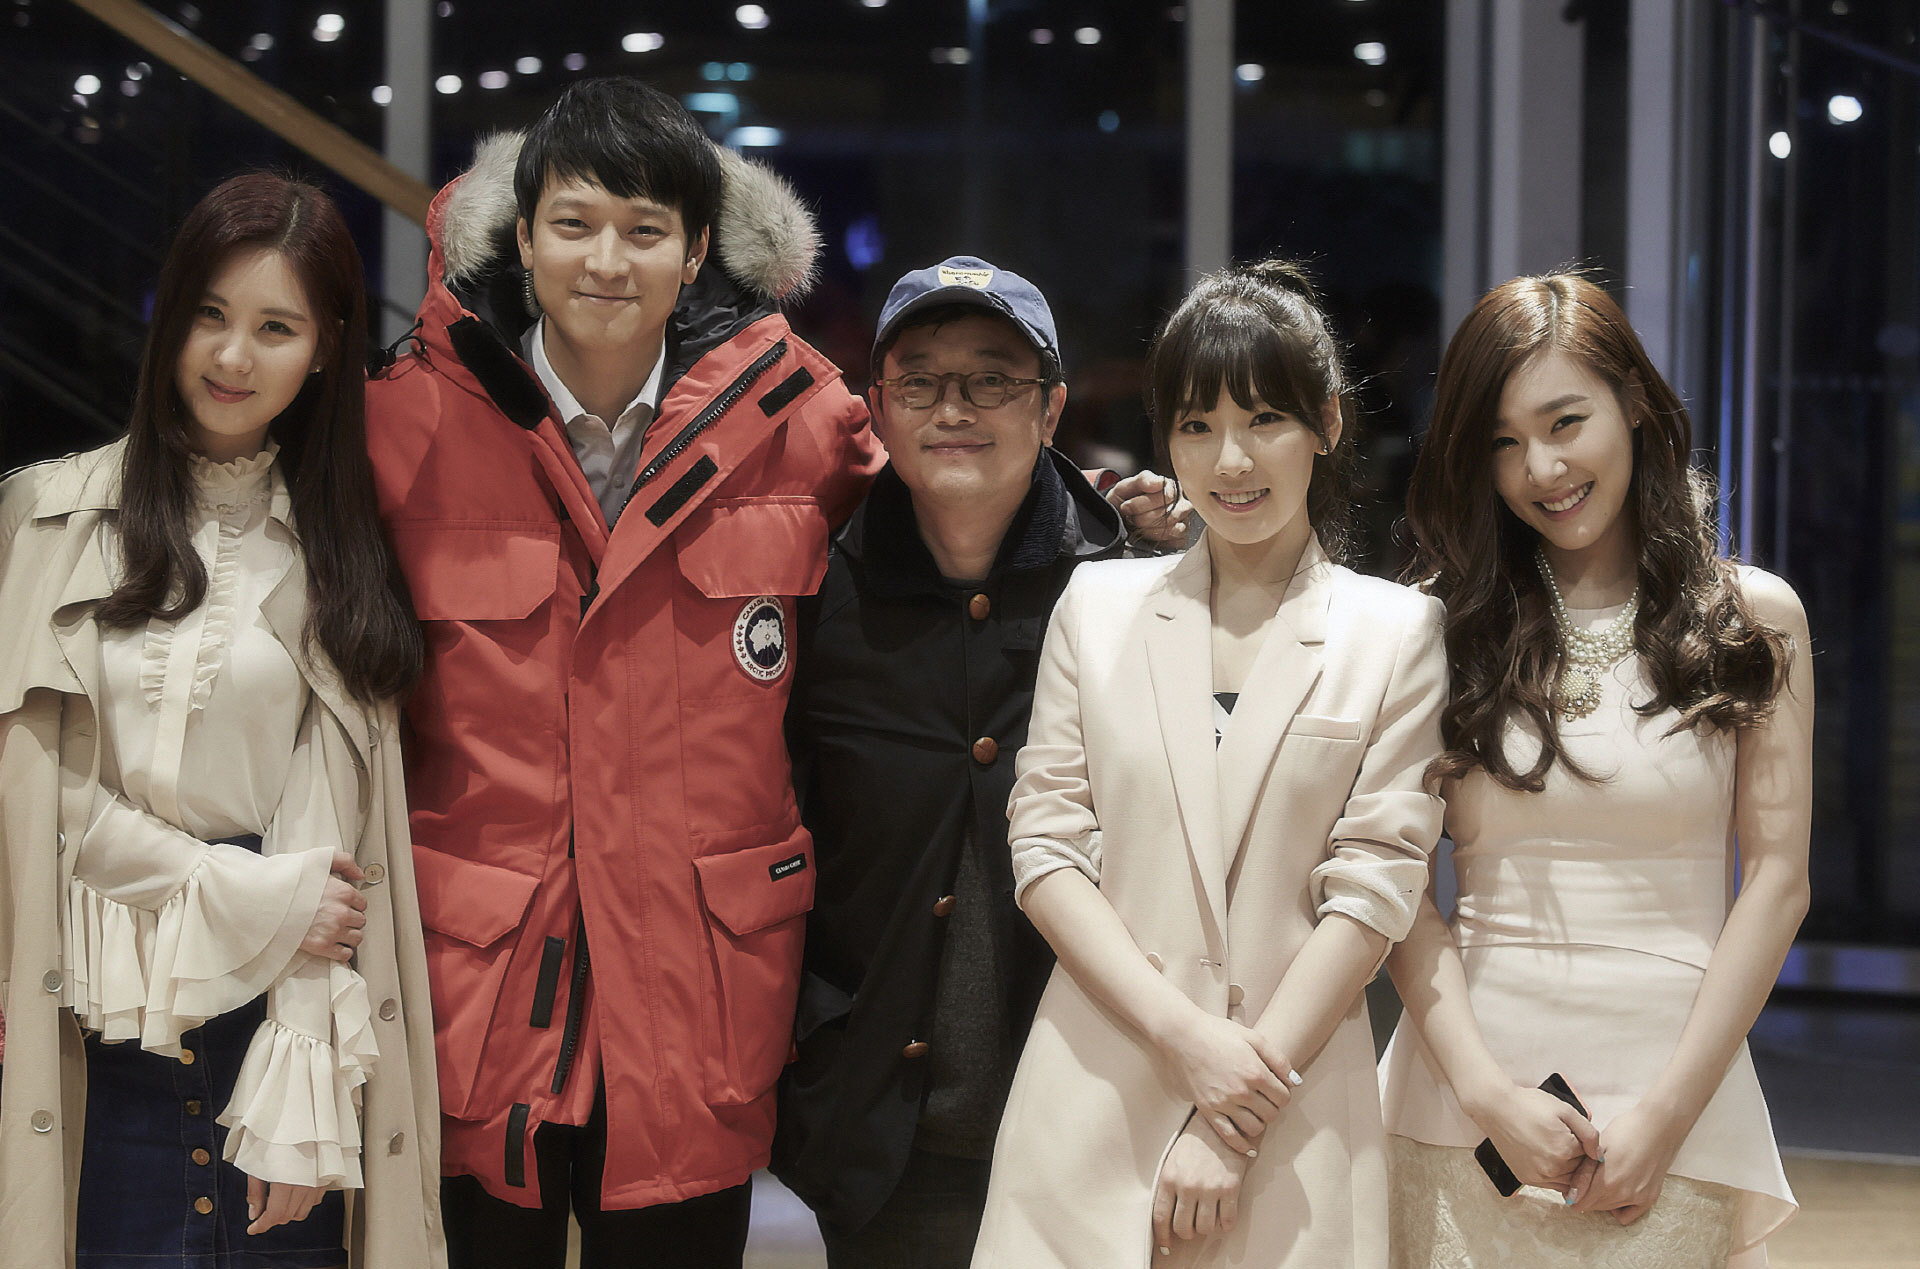 [PIC][08-04-2014]TaeTiSeo làm cameo cho bộ phim điện ảnh "My Palpitating Life" của Kang DongWoon + Xuất hiện tại phim trường vào tối qua 263DAD4A53FBD4AC166AFB